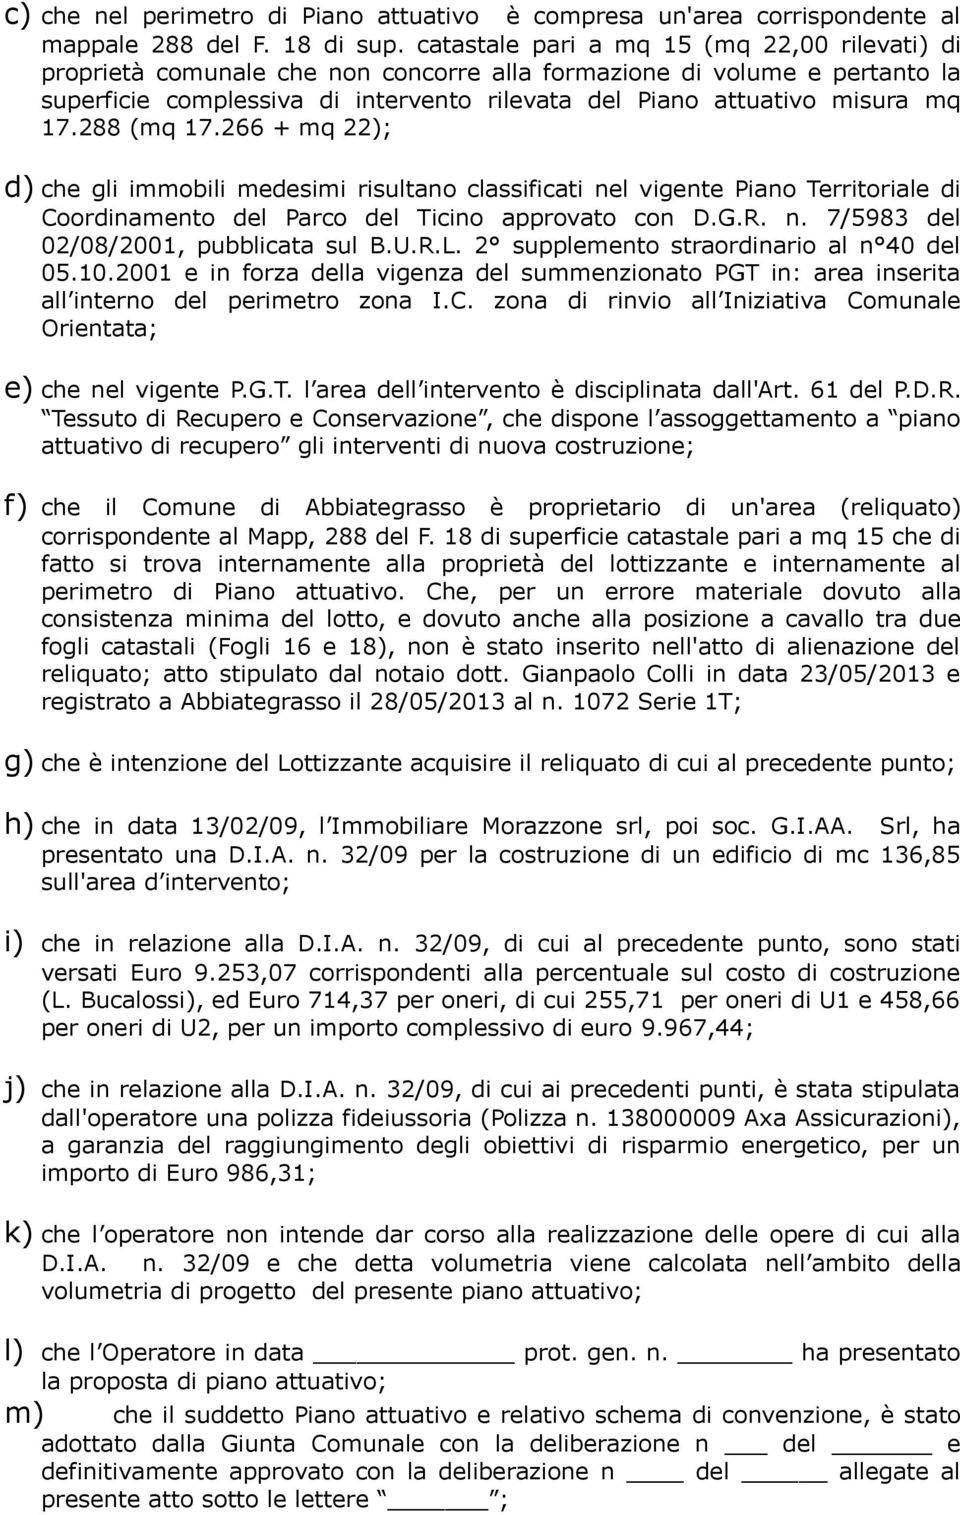 17.288 (mq 17.266 + mq 22); d) che gli immobili medesimi risultano classificati nel vigente Piano Territoriale di Coordinamento del Parco del Ticino approvato con D.G.R. n. 7/5983 del 02/08/2001, pubblicata sul B.